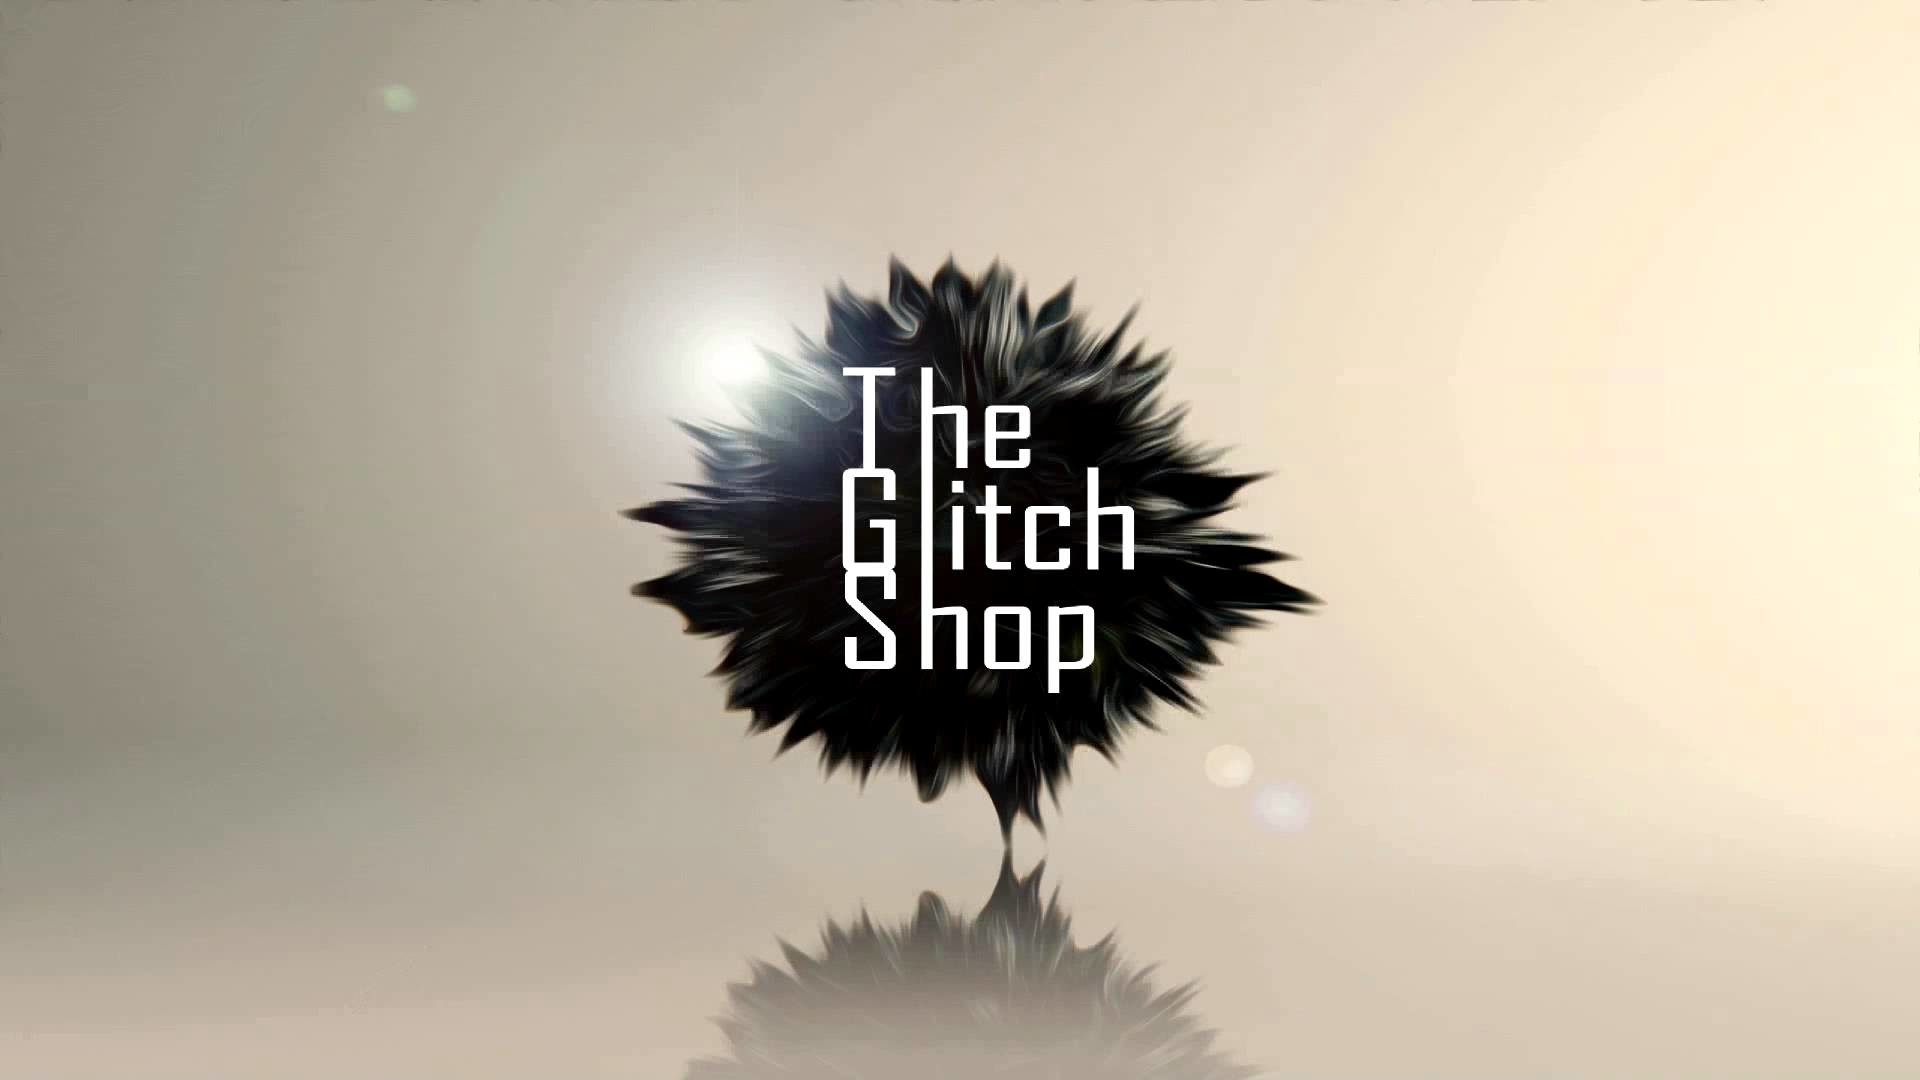 Glitch shop